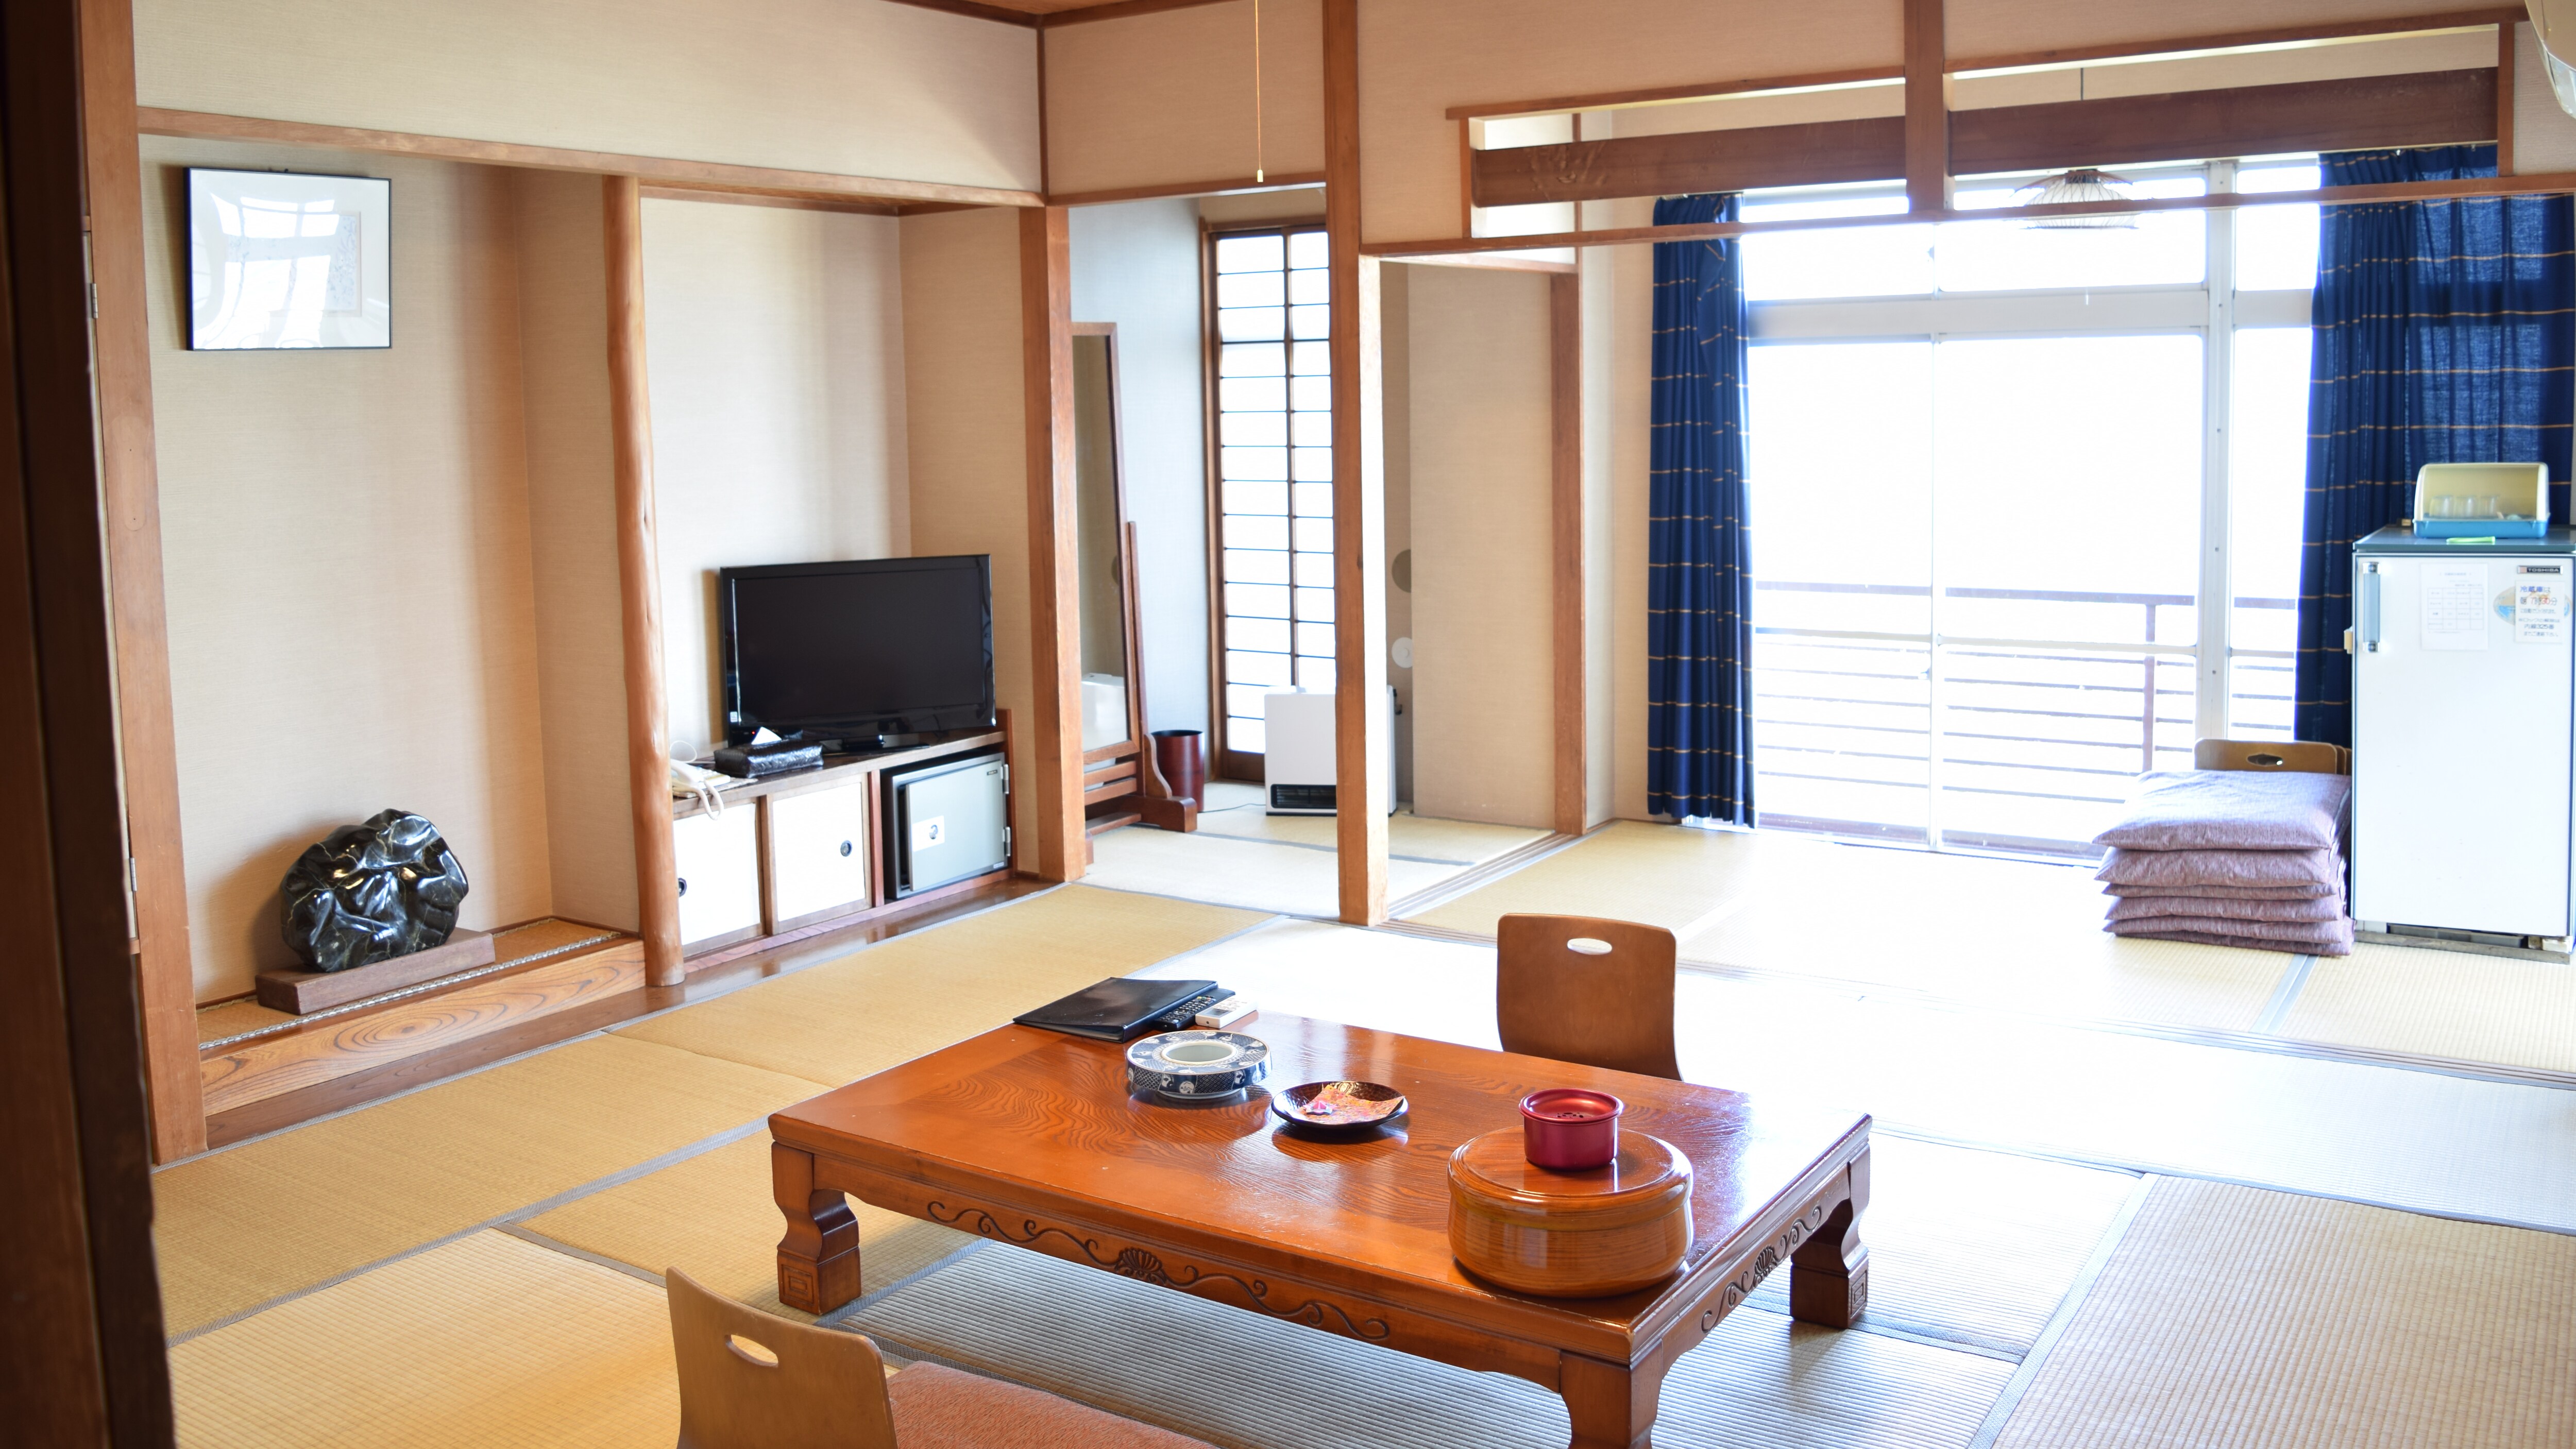 객실 타입:오마카세 일본식 방